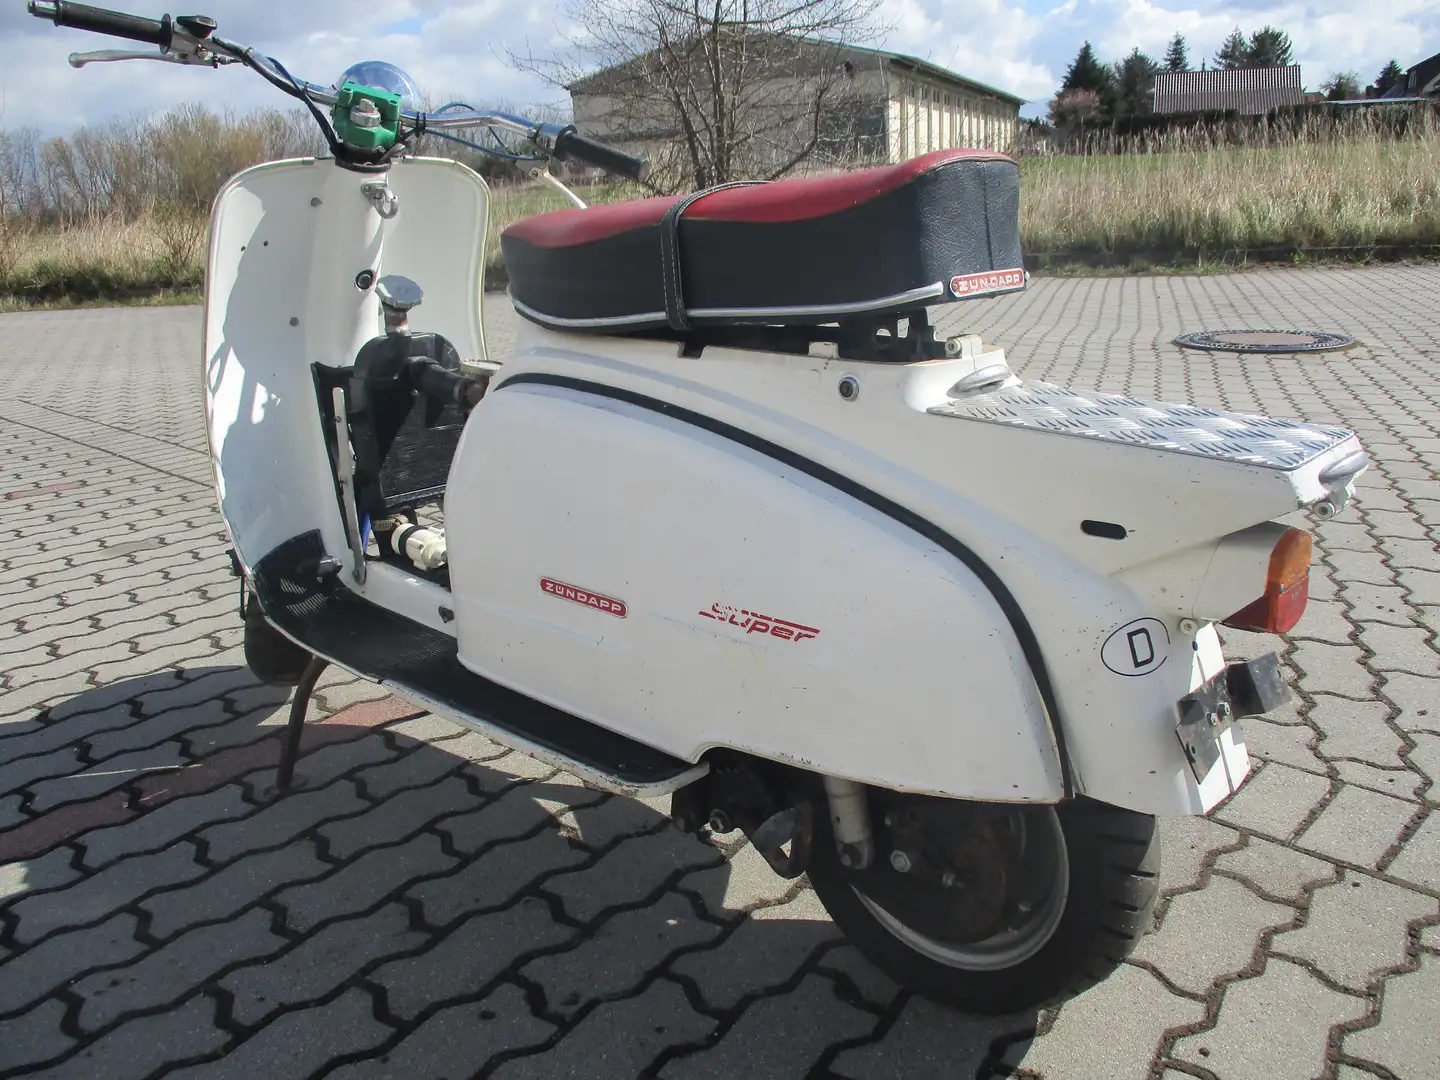 Zündapp R 50 Roller/Scooter in Weiß gebraucht in Calau für € 1.500,-